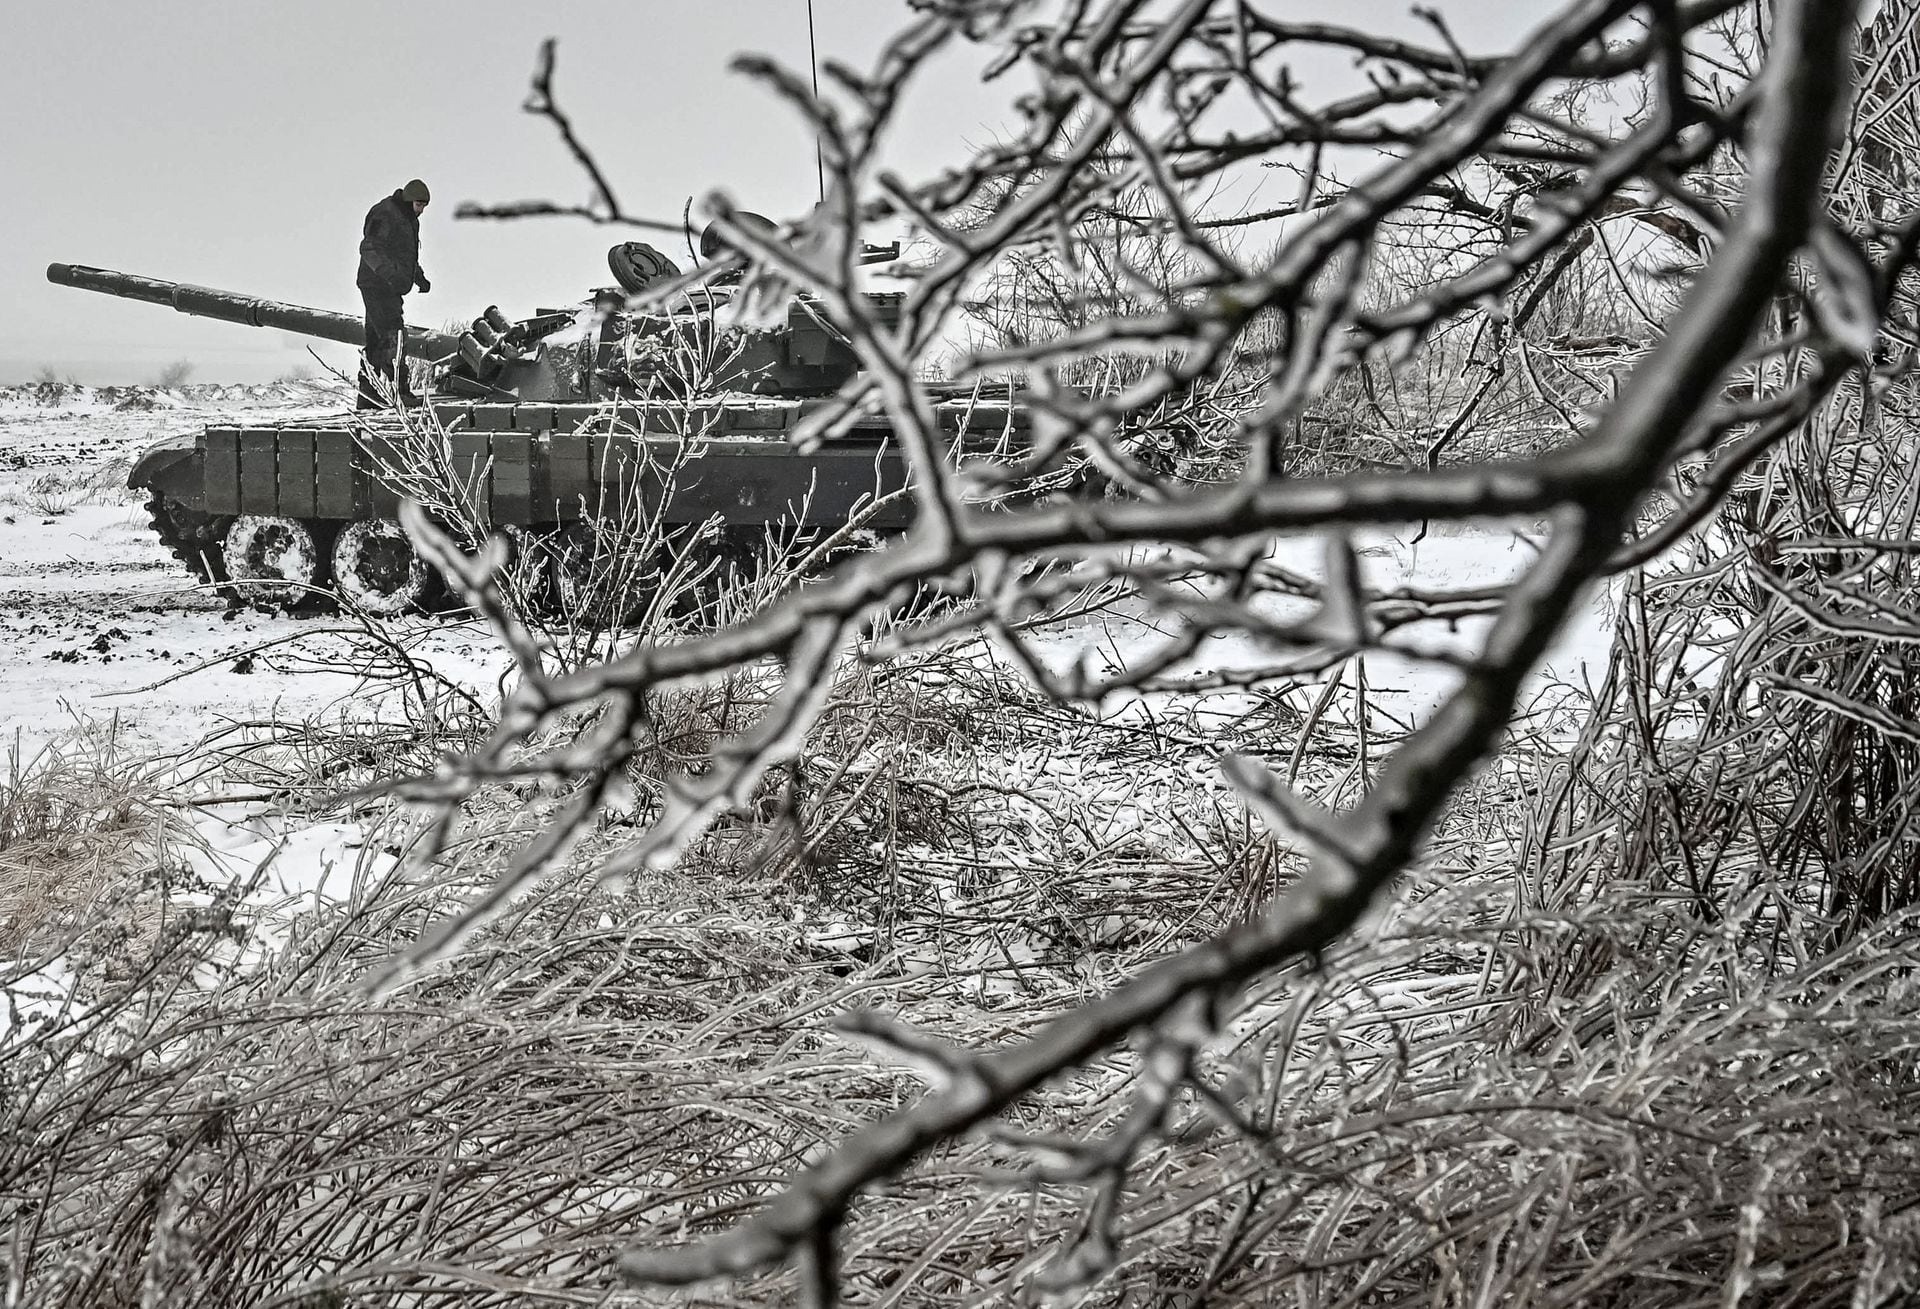 Quân đội Ukraine dựng rào chắn "răng rồng", đào hào và chuyển sang phòng thủ giữa tuyết trắng xóa- Ảnh 9.